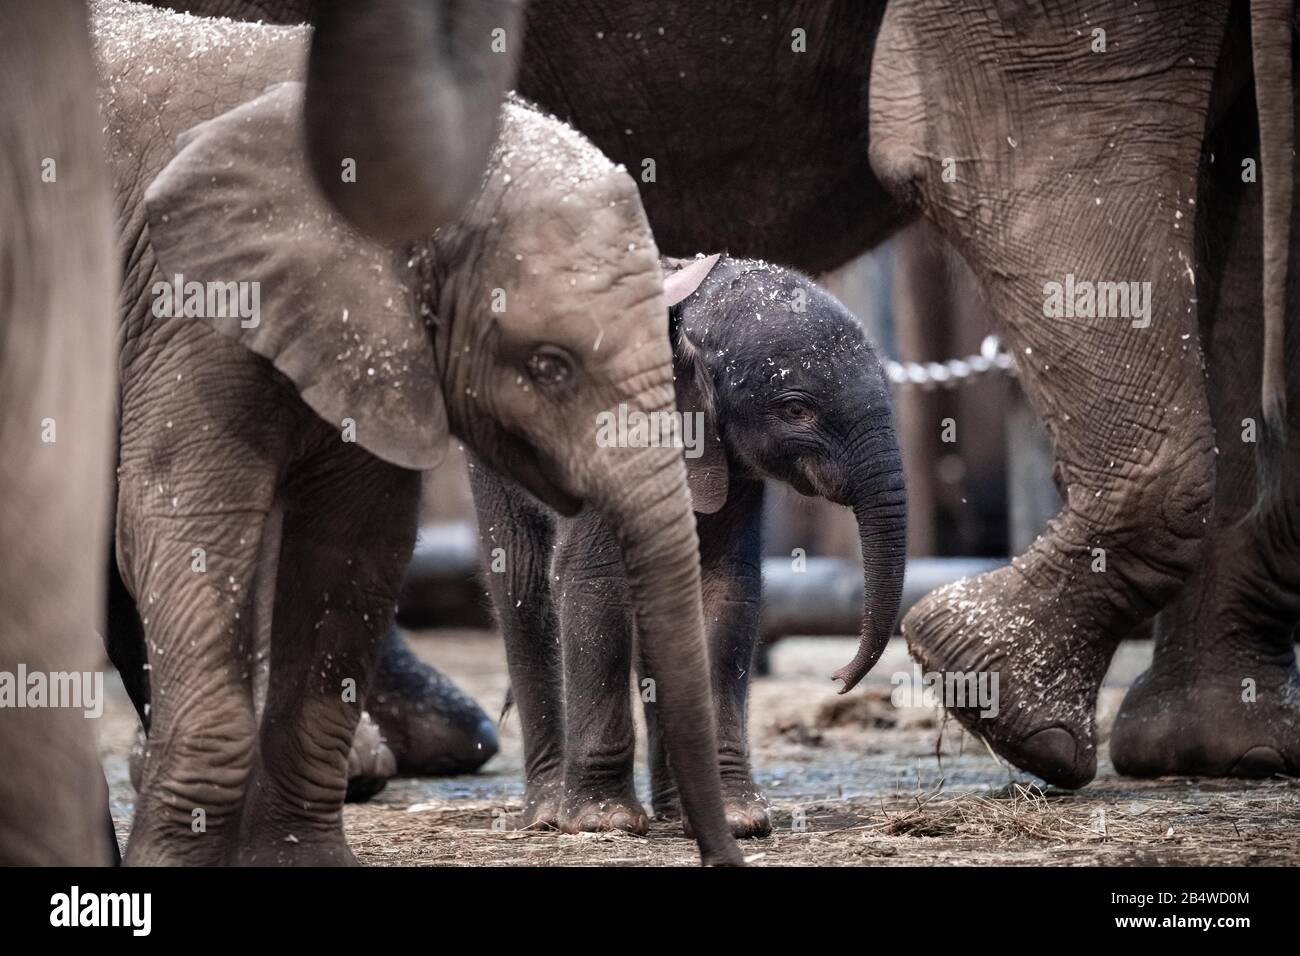 Wuppertal, Deutschland. März 2020. Der Elefantenjunge "Tsavo" befindet sich im Gehege des Zoos. Am Freitag wurde im Zoo Wuppertal ein Baby-Elefant geboren. Die Elefantenkuh 'Sweni' brachte das gesunde männliche Kalb zur Welt. Der Elefantenjunge heißt "Tsavo". Das Elefantenhaus war am Freitag geschlossen, aber ab Samstag ist das Jungtier öffentlich zu sehen. Kredit: Fabian Strauch / epa Scanpix Schweden / dpa / Alamy Live News Stockfoto